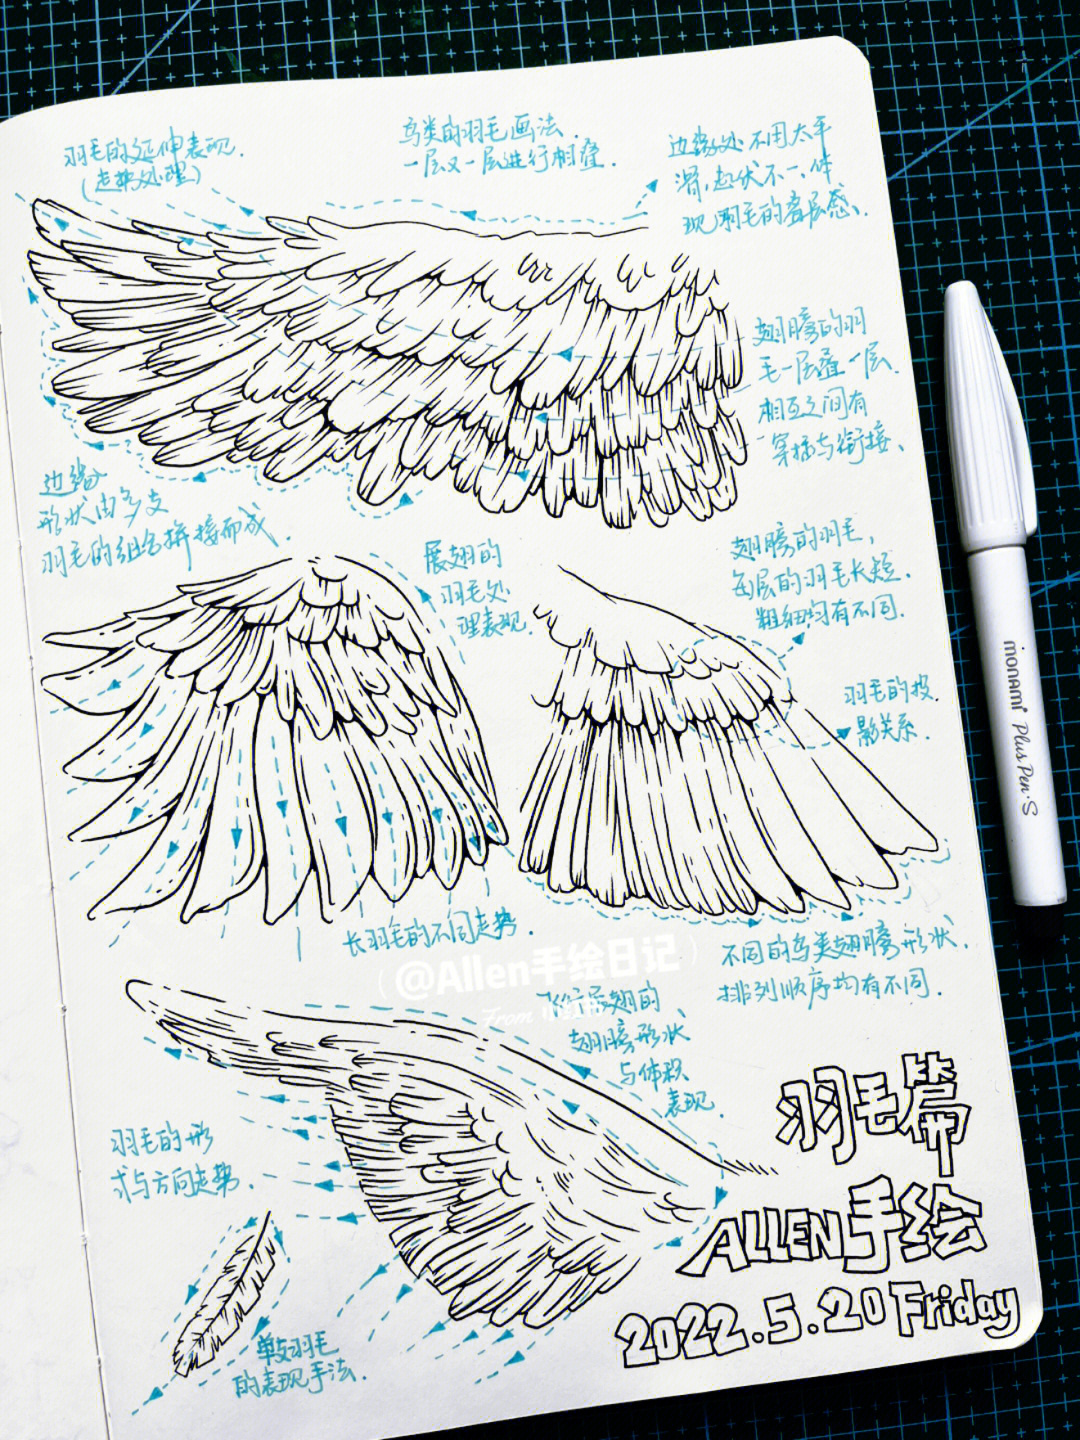 的原创笔记关于视觉传达设计考研手绘素材羽毛元素的画法希望大家喜欢